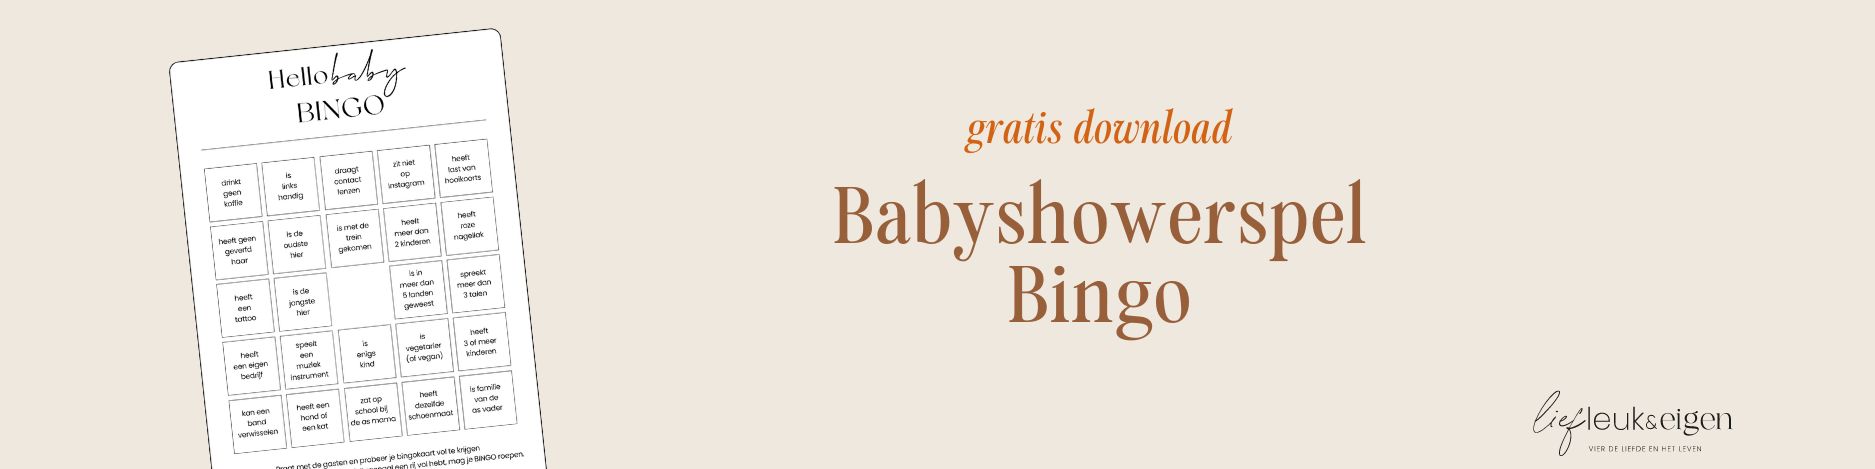 Babyshowerspel Bingo gratis download